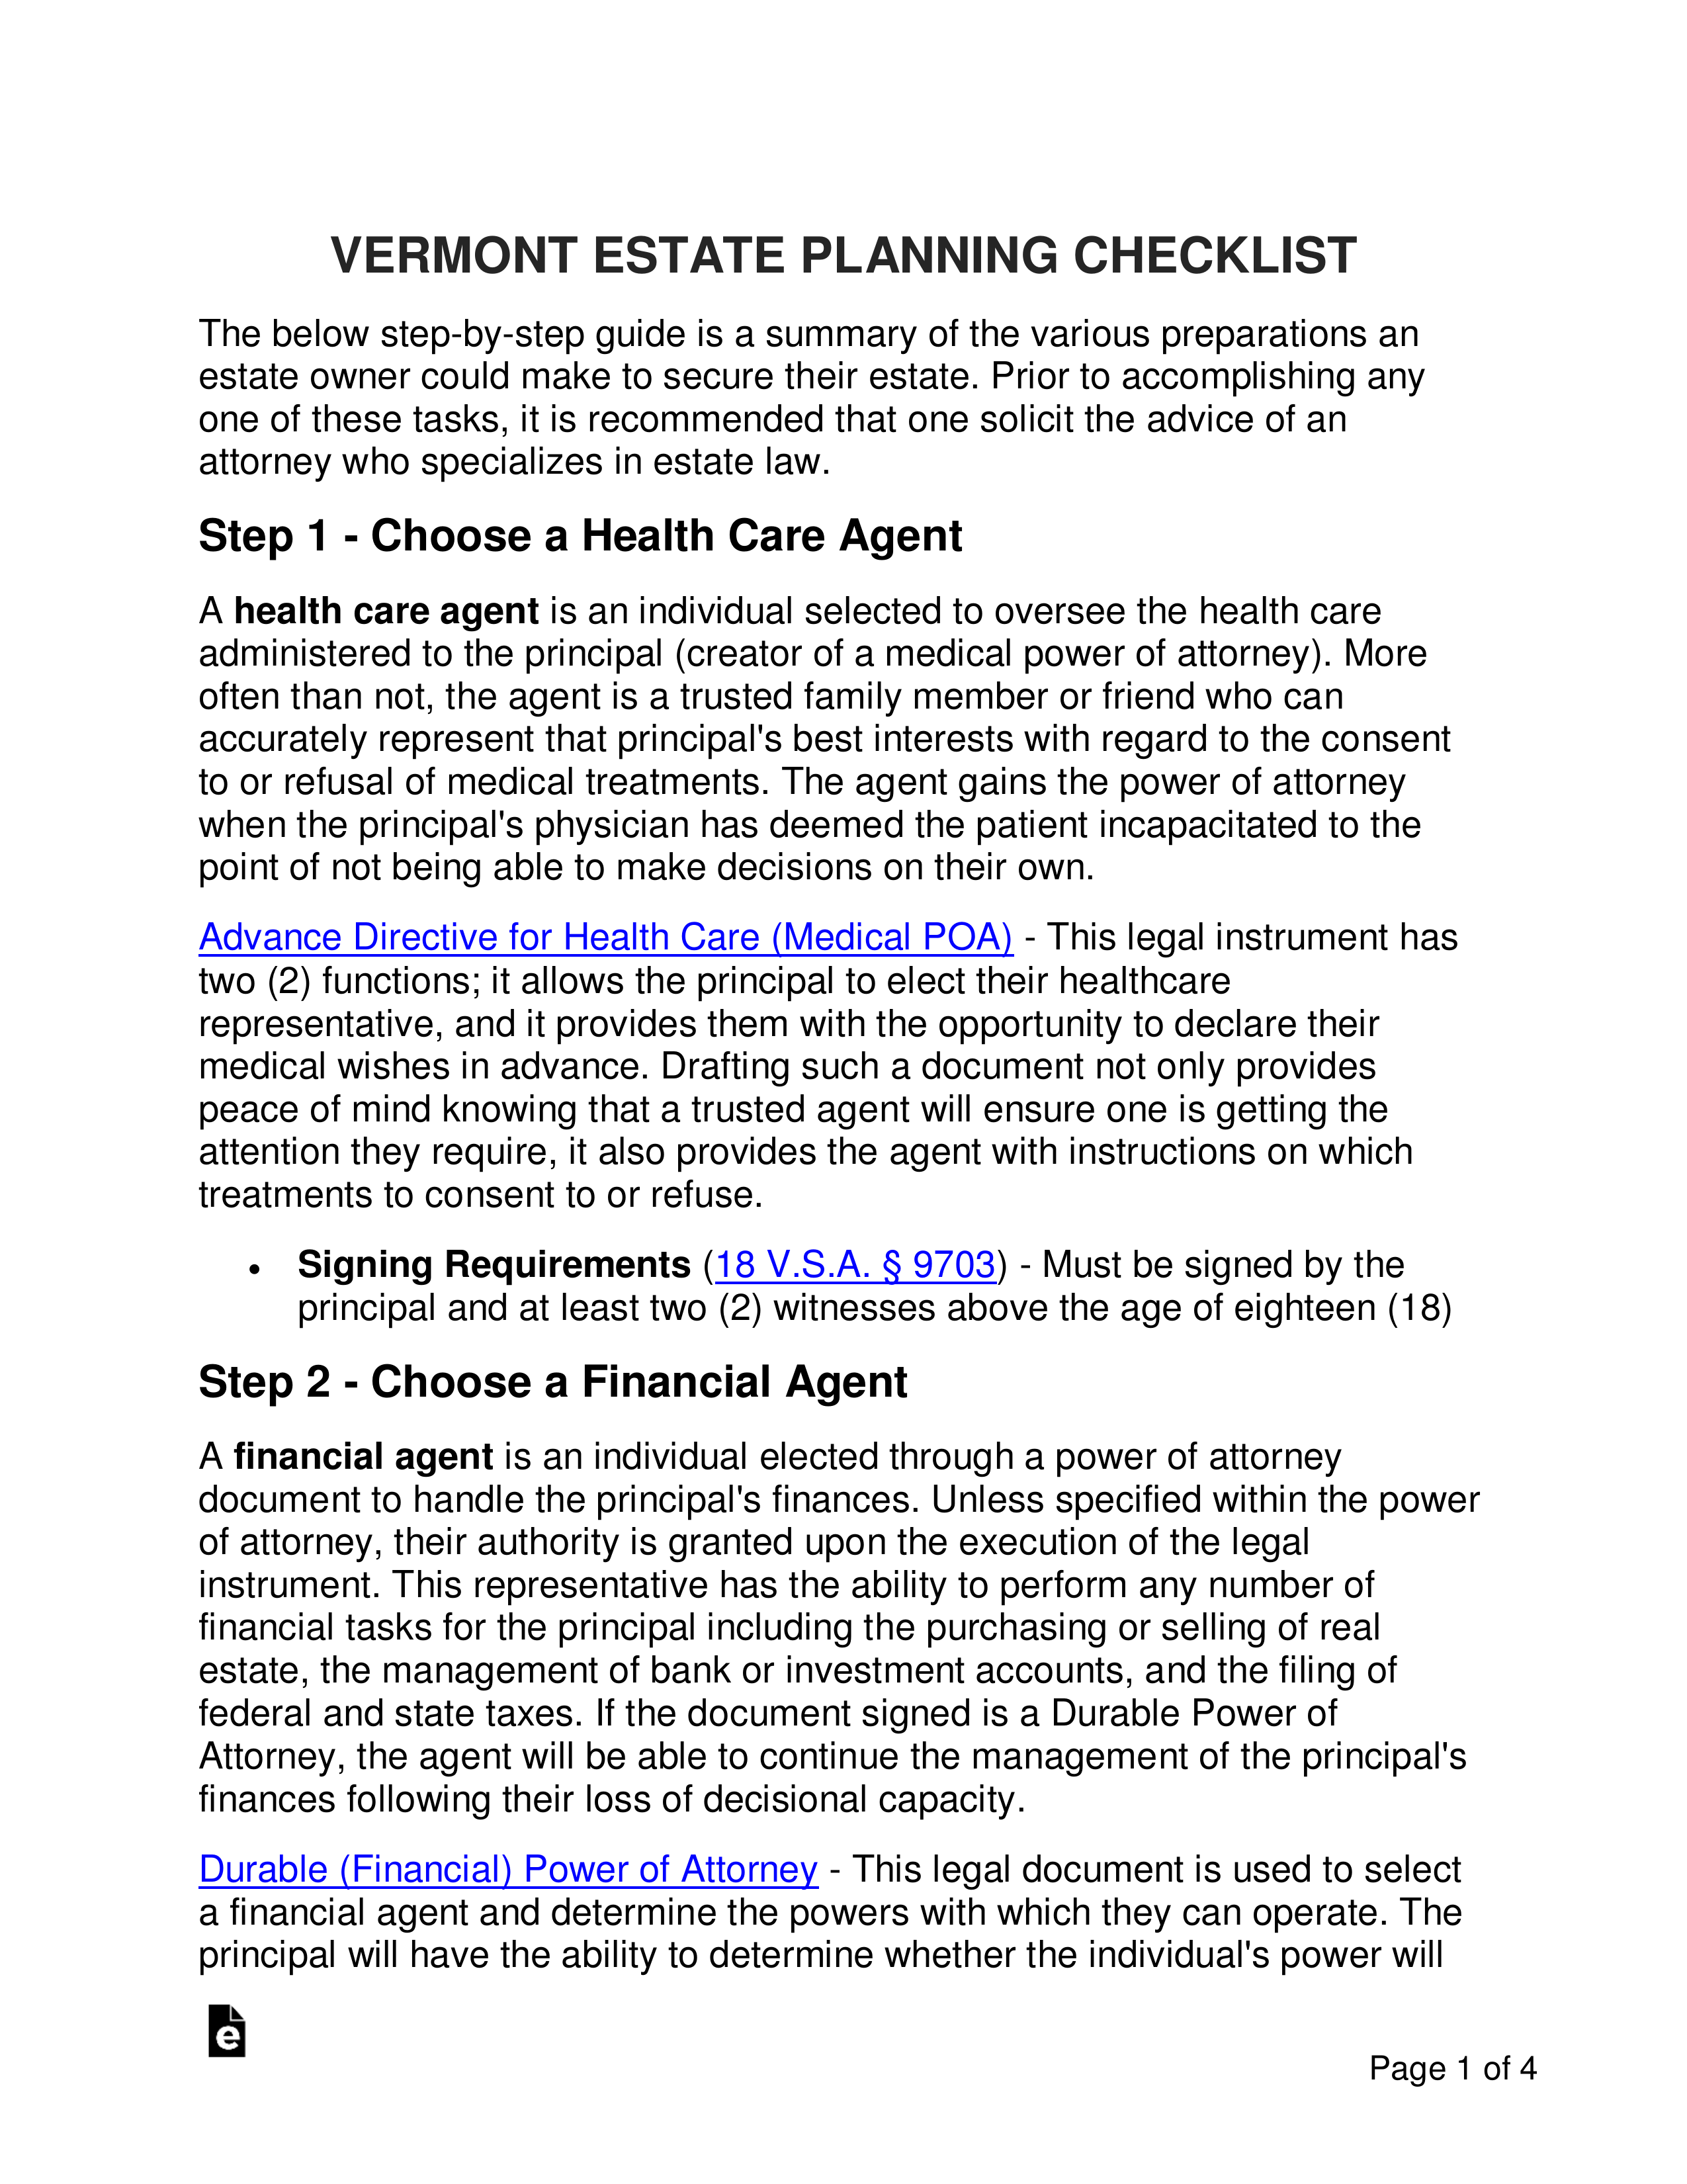 Vermont Estate Planning Checklist